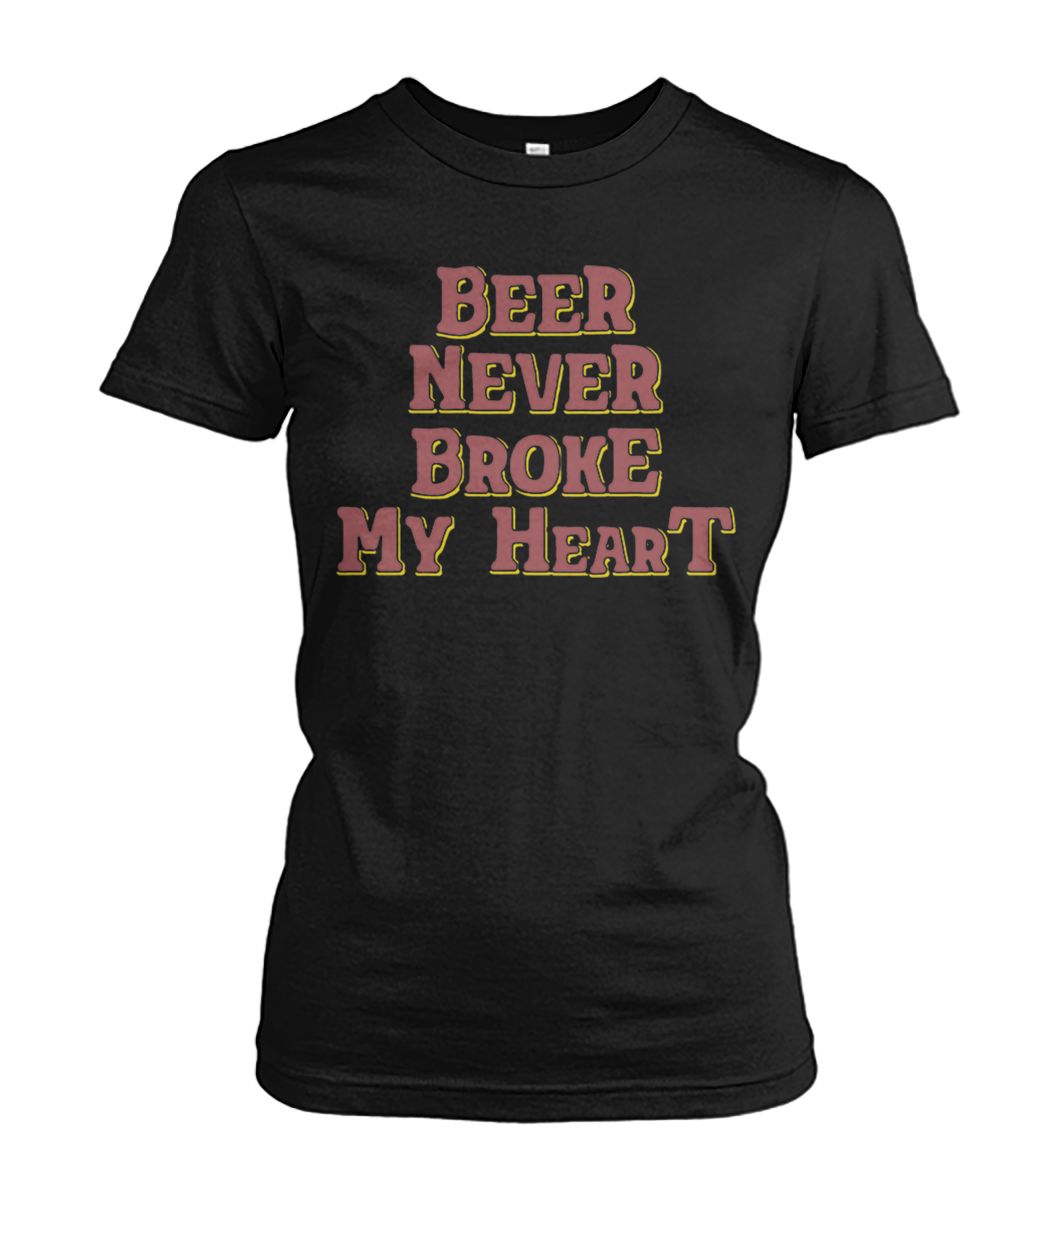 Beer never broke my heart women's crew tee